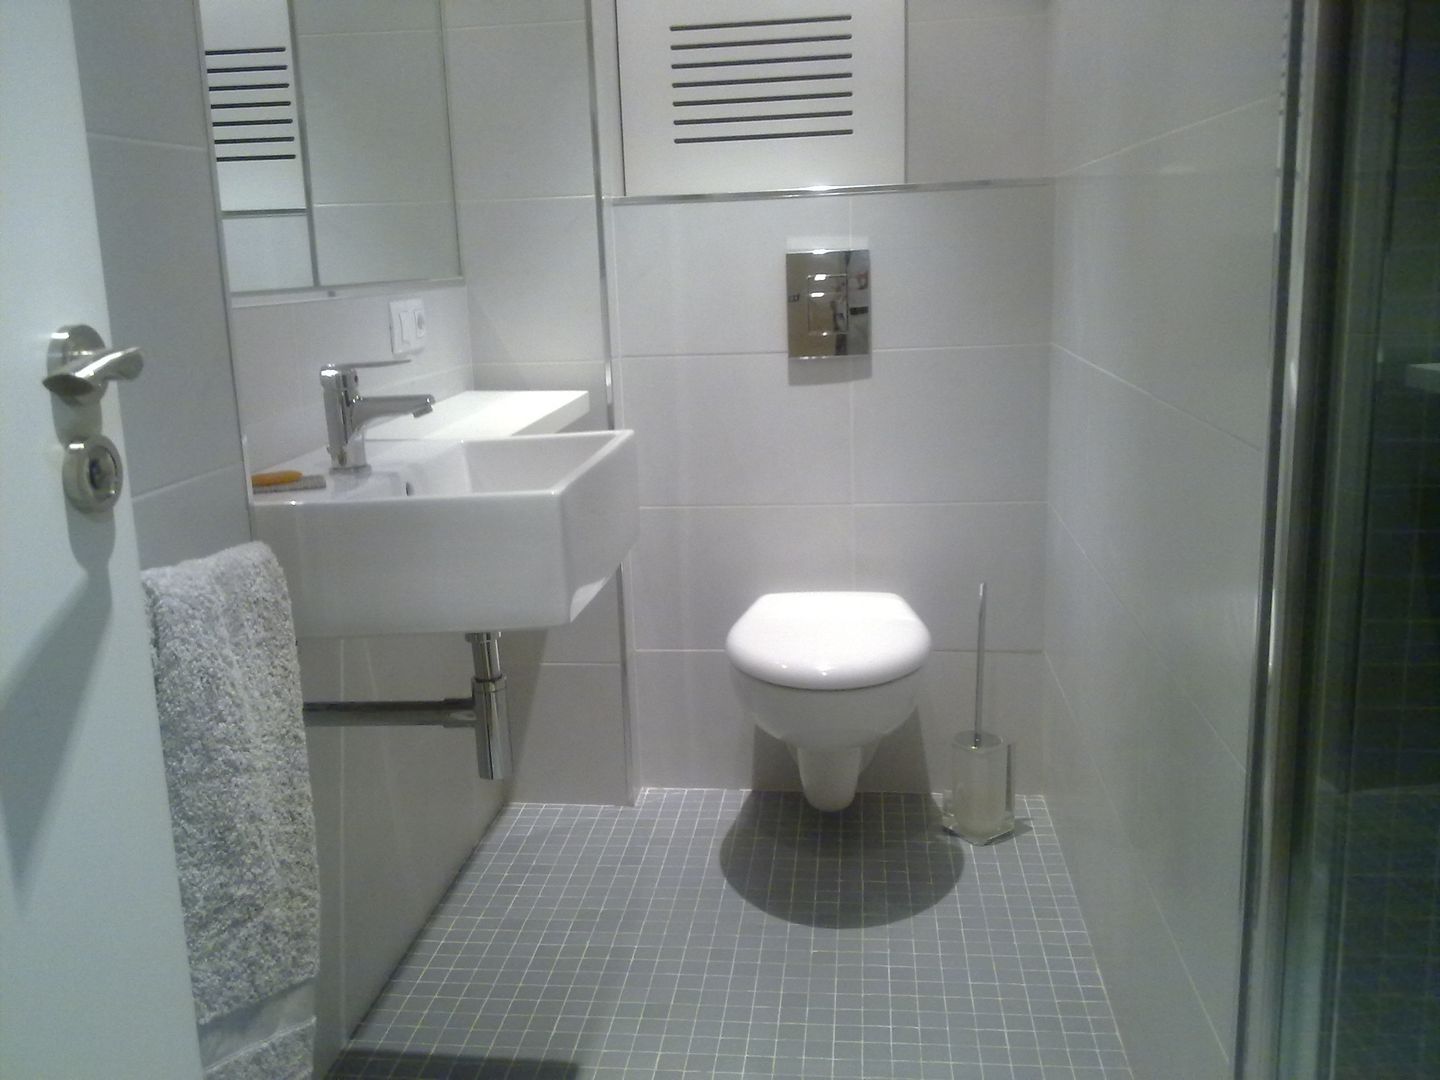 De aseo de cortesía a baño completo, Arquitectos Fin Arquitectos Fin Modern bathroom